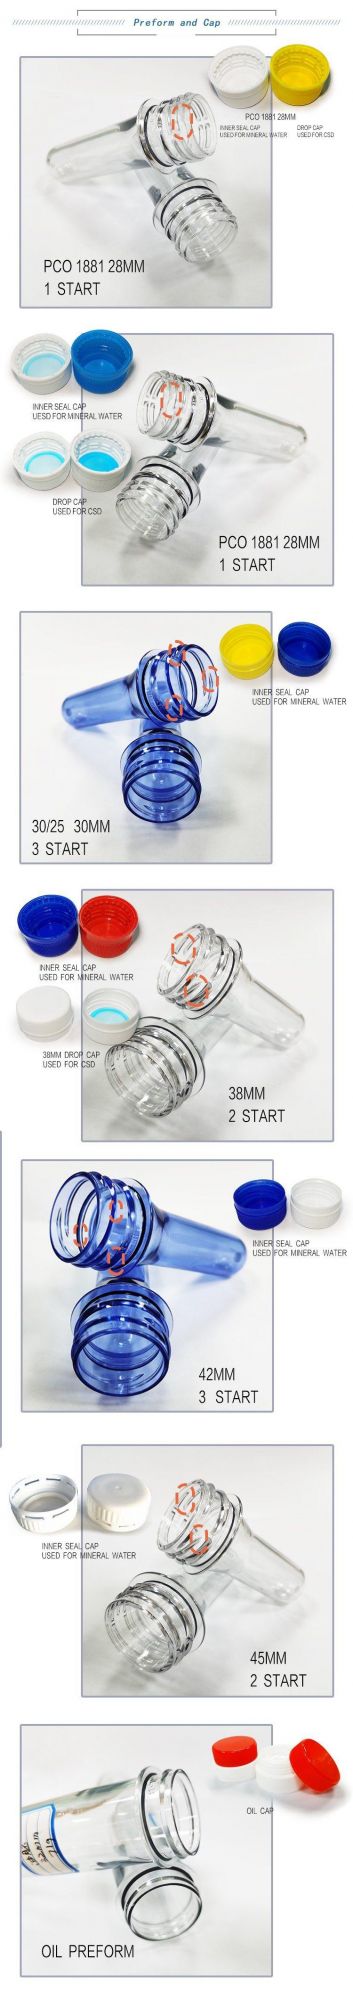 Bottles Plastic Bottle Preform 38mm 30g Pet for Mineral Bottle/Juice/CSD/Hot Filling